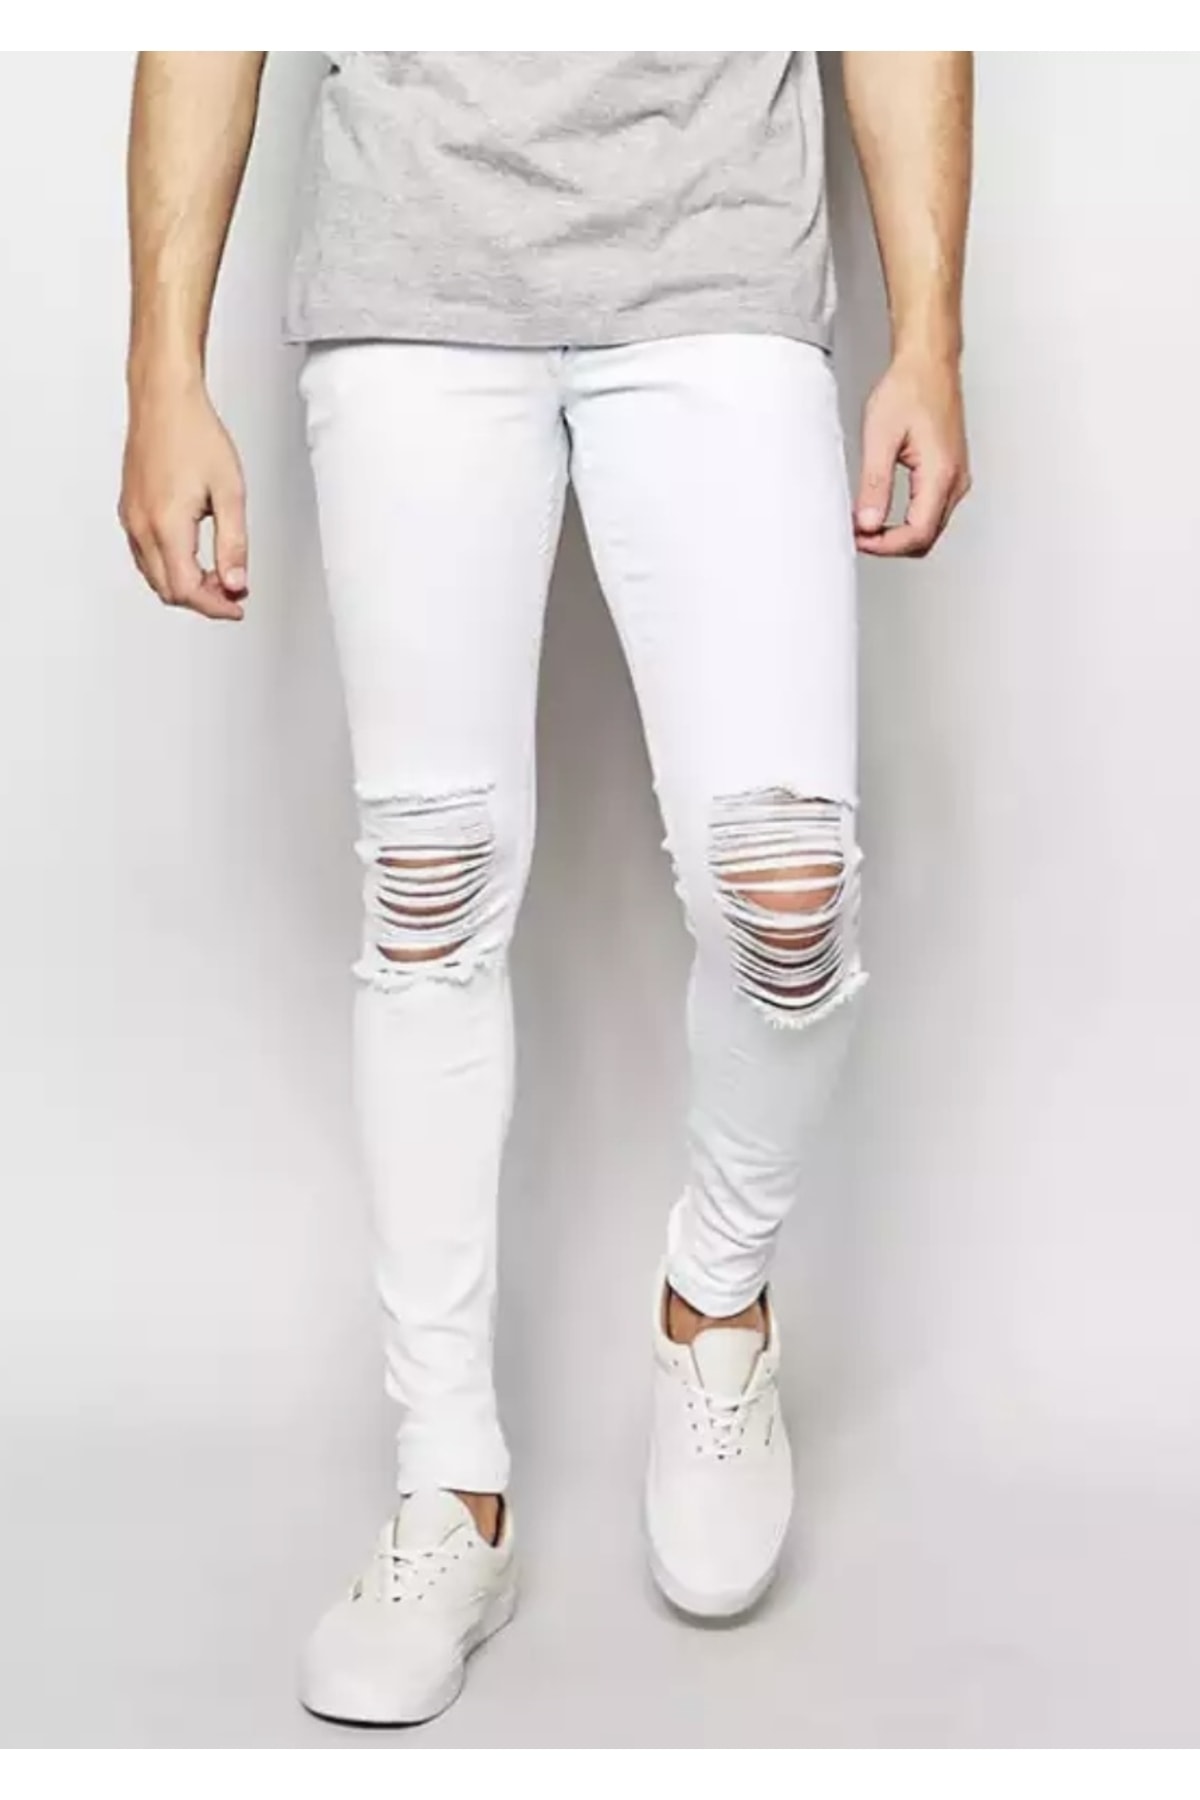 AMOR MAN Özel Tasarım Sıralı Yırtık Detaylı Marjinal Slim Fit Erkek Jeans Kot Pantolon